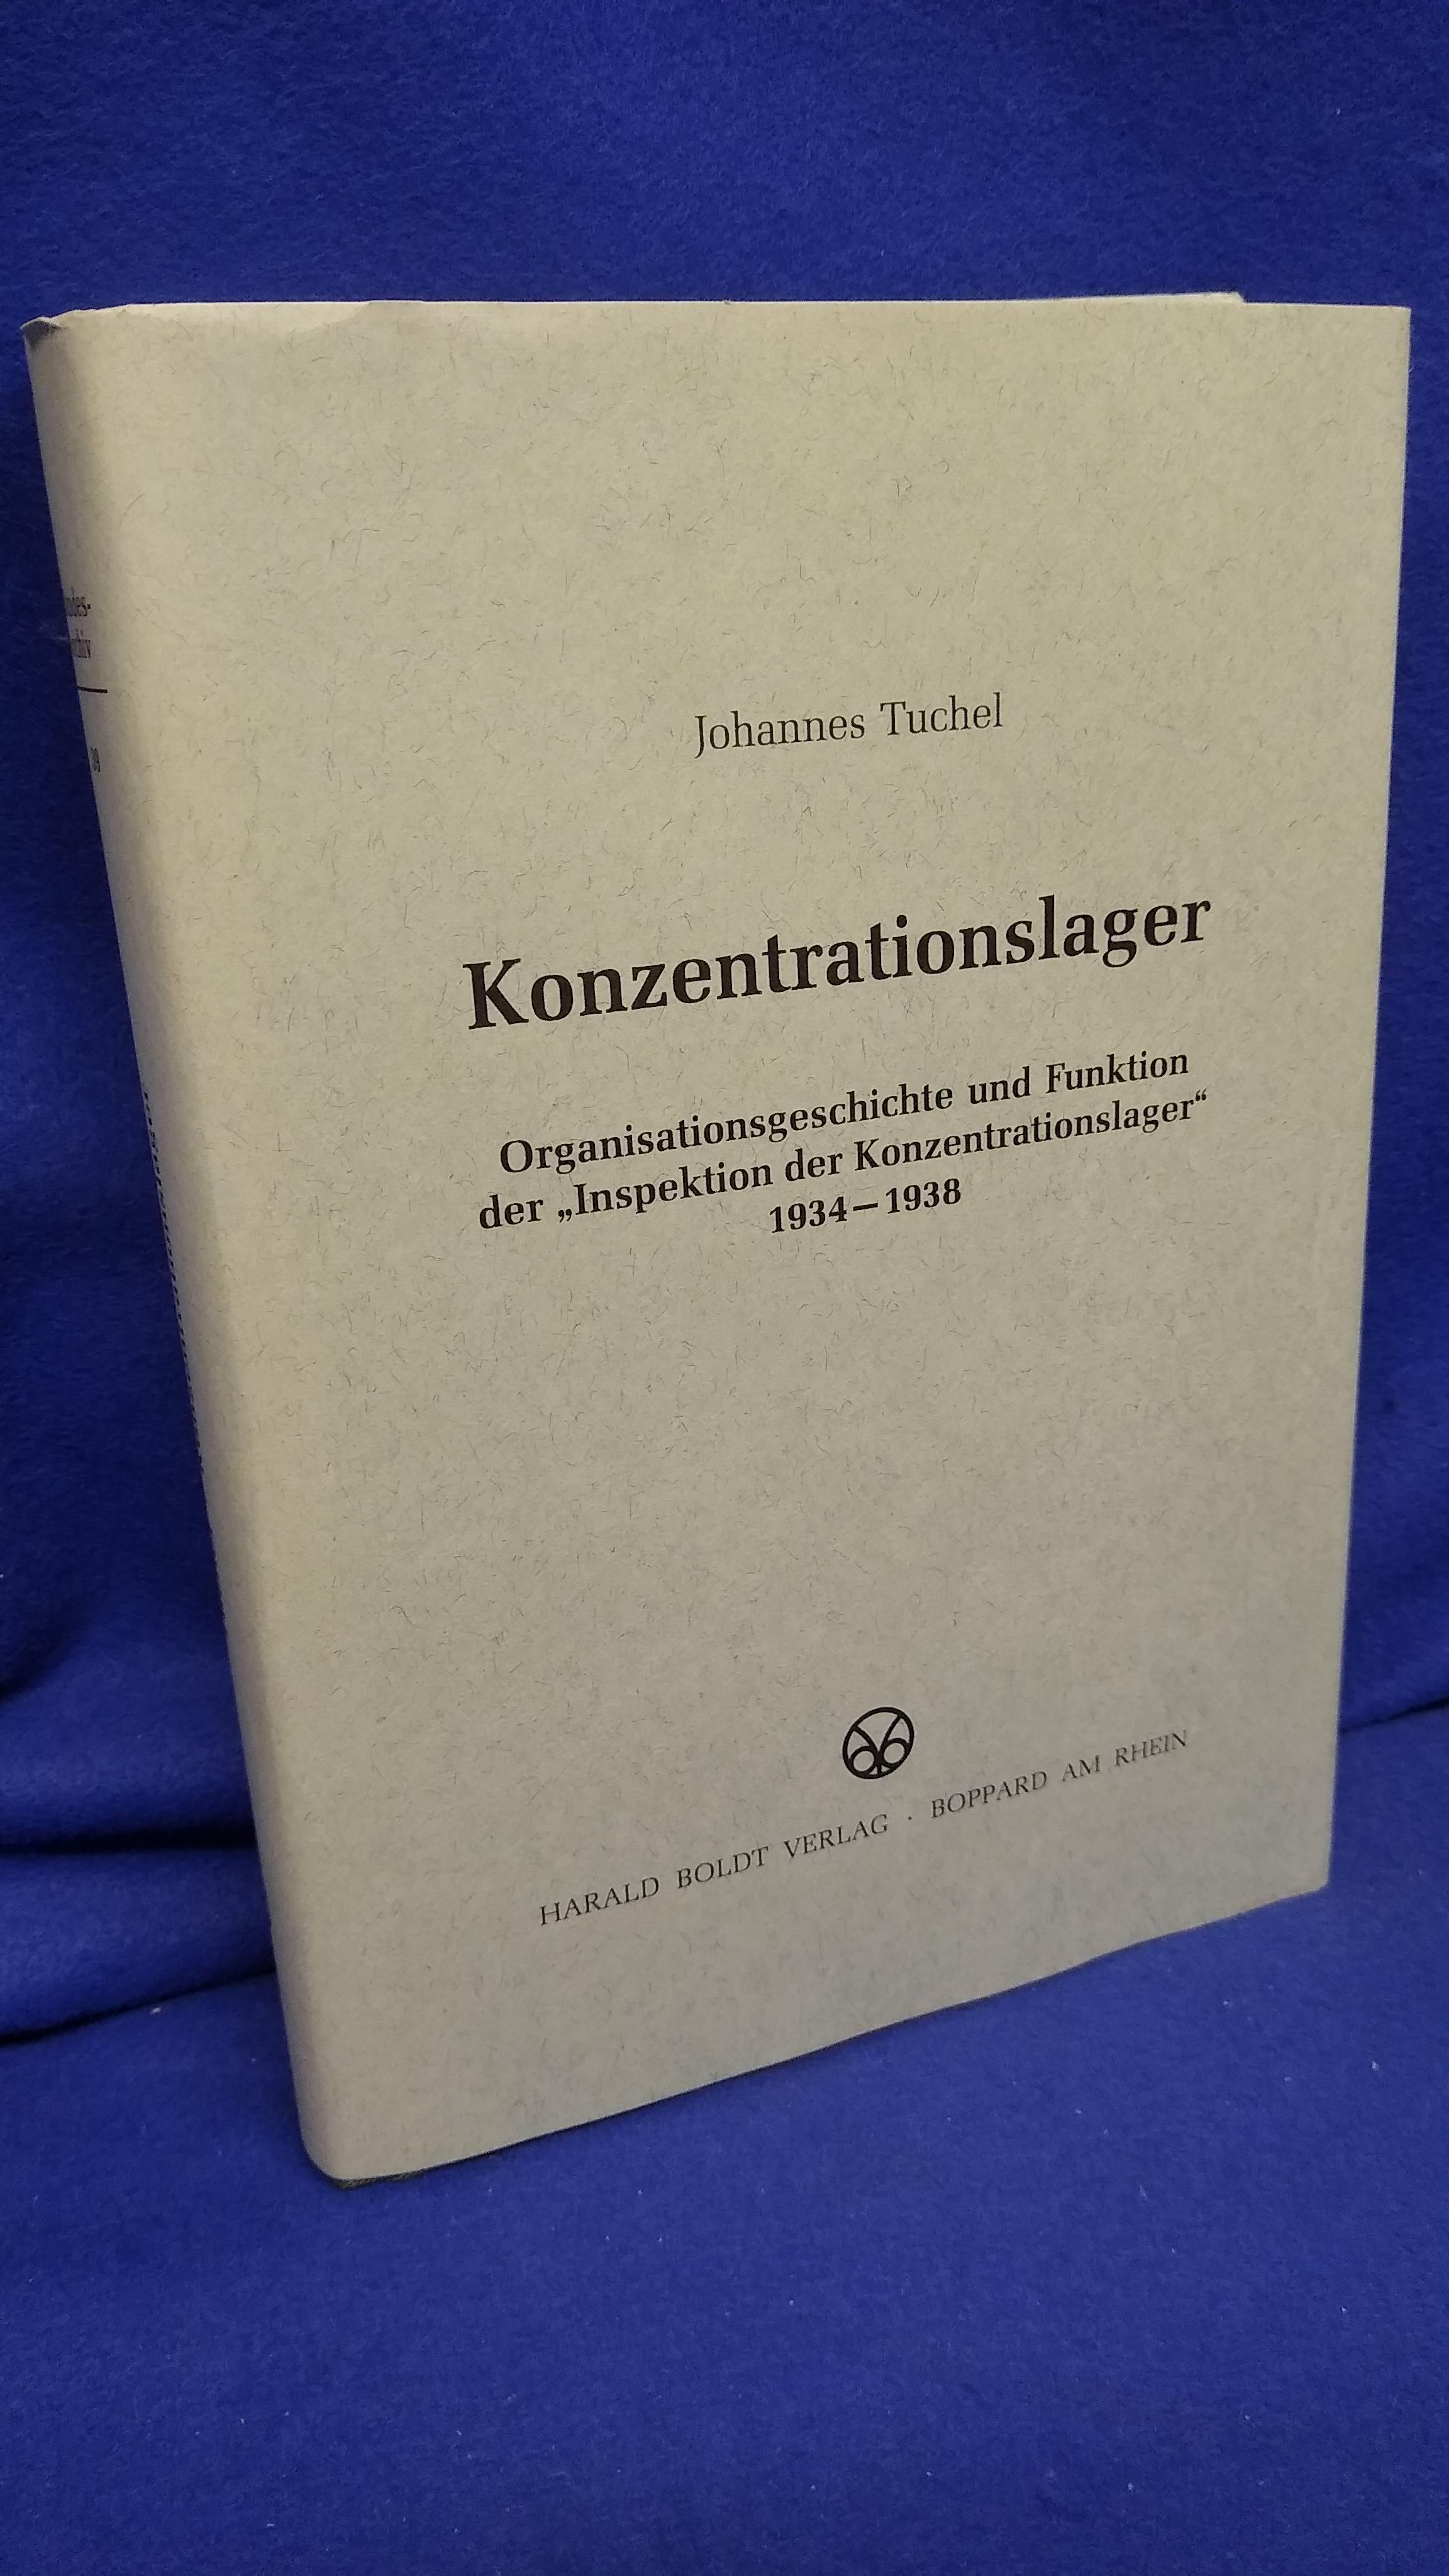 Konzentrationslager. Organisationsgeschichte und Funktion der "Inspektion der Konzentrationslager" 1934-1938.